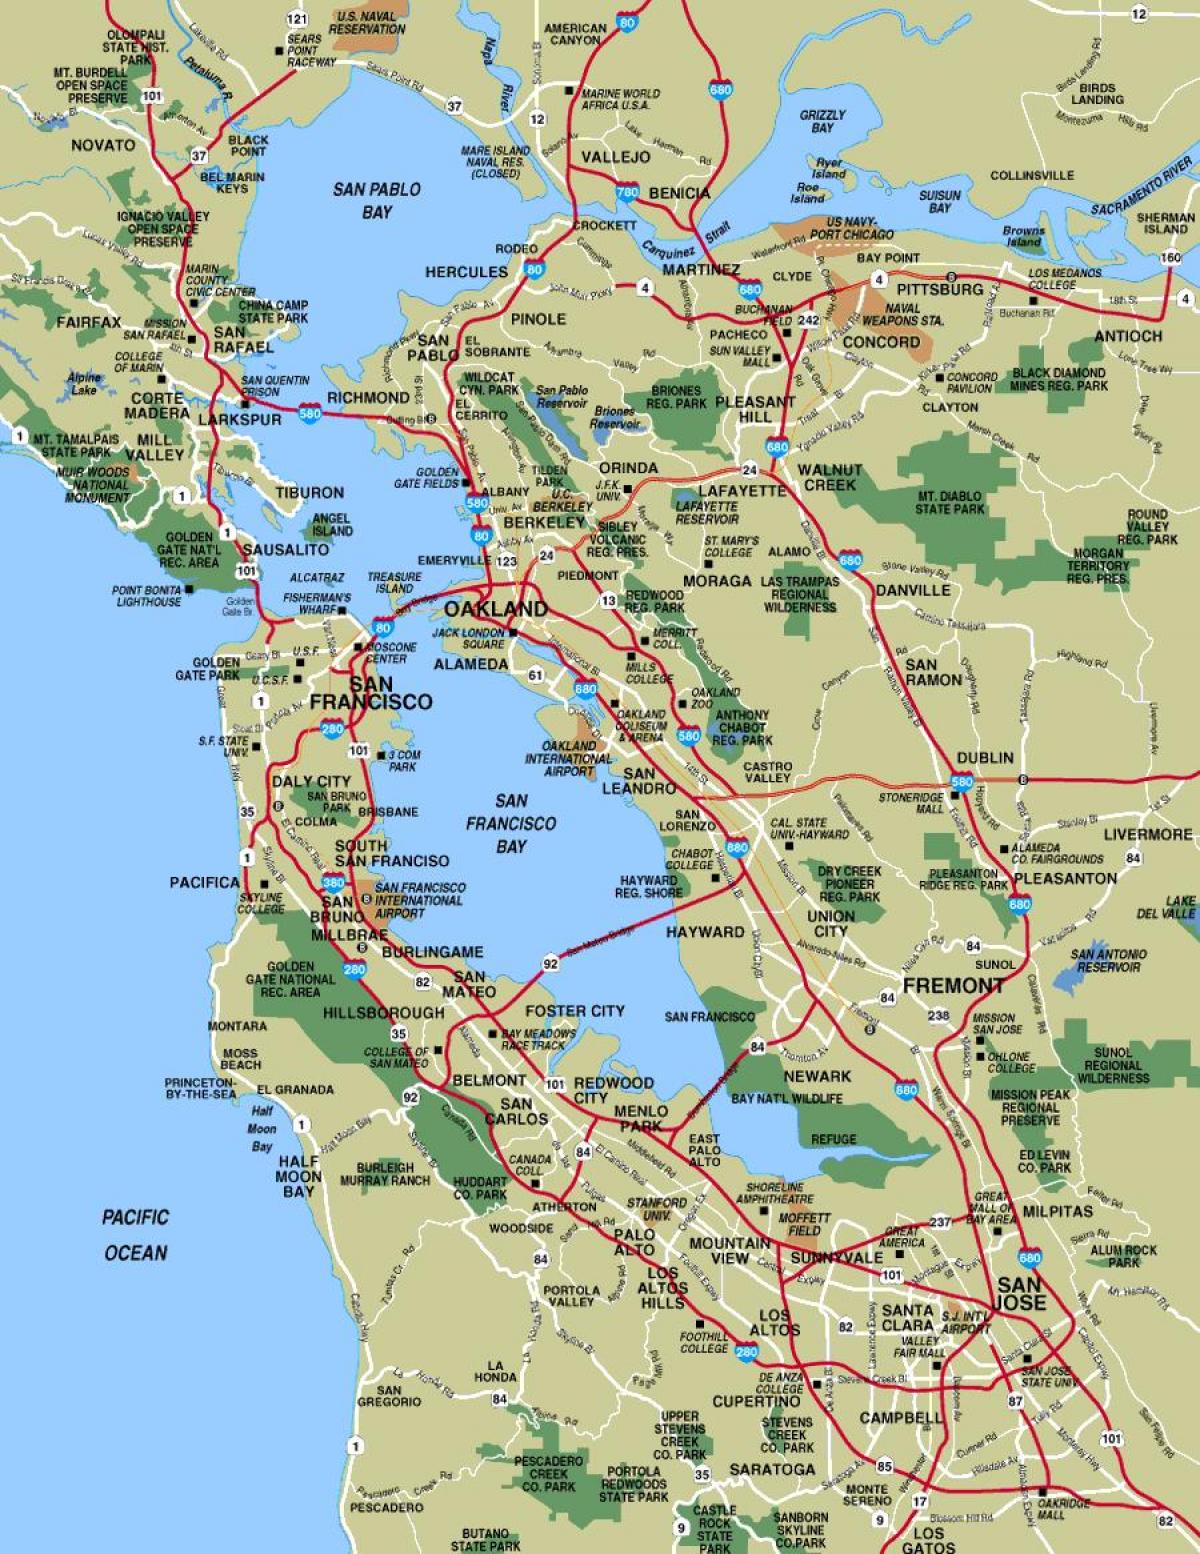 旧金山和区域地图